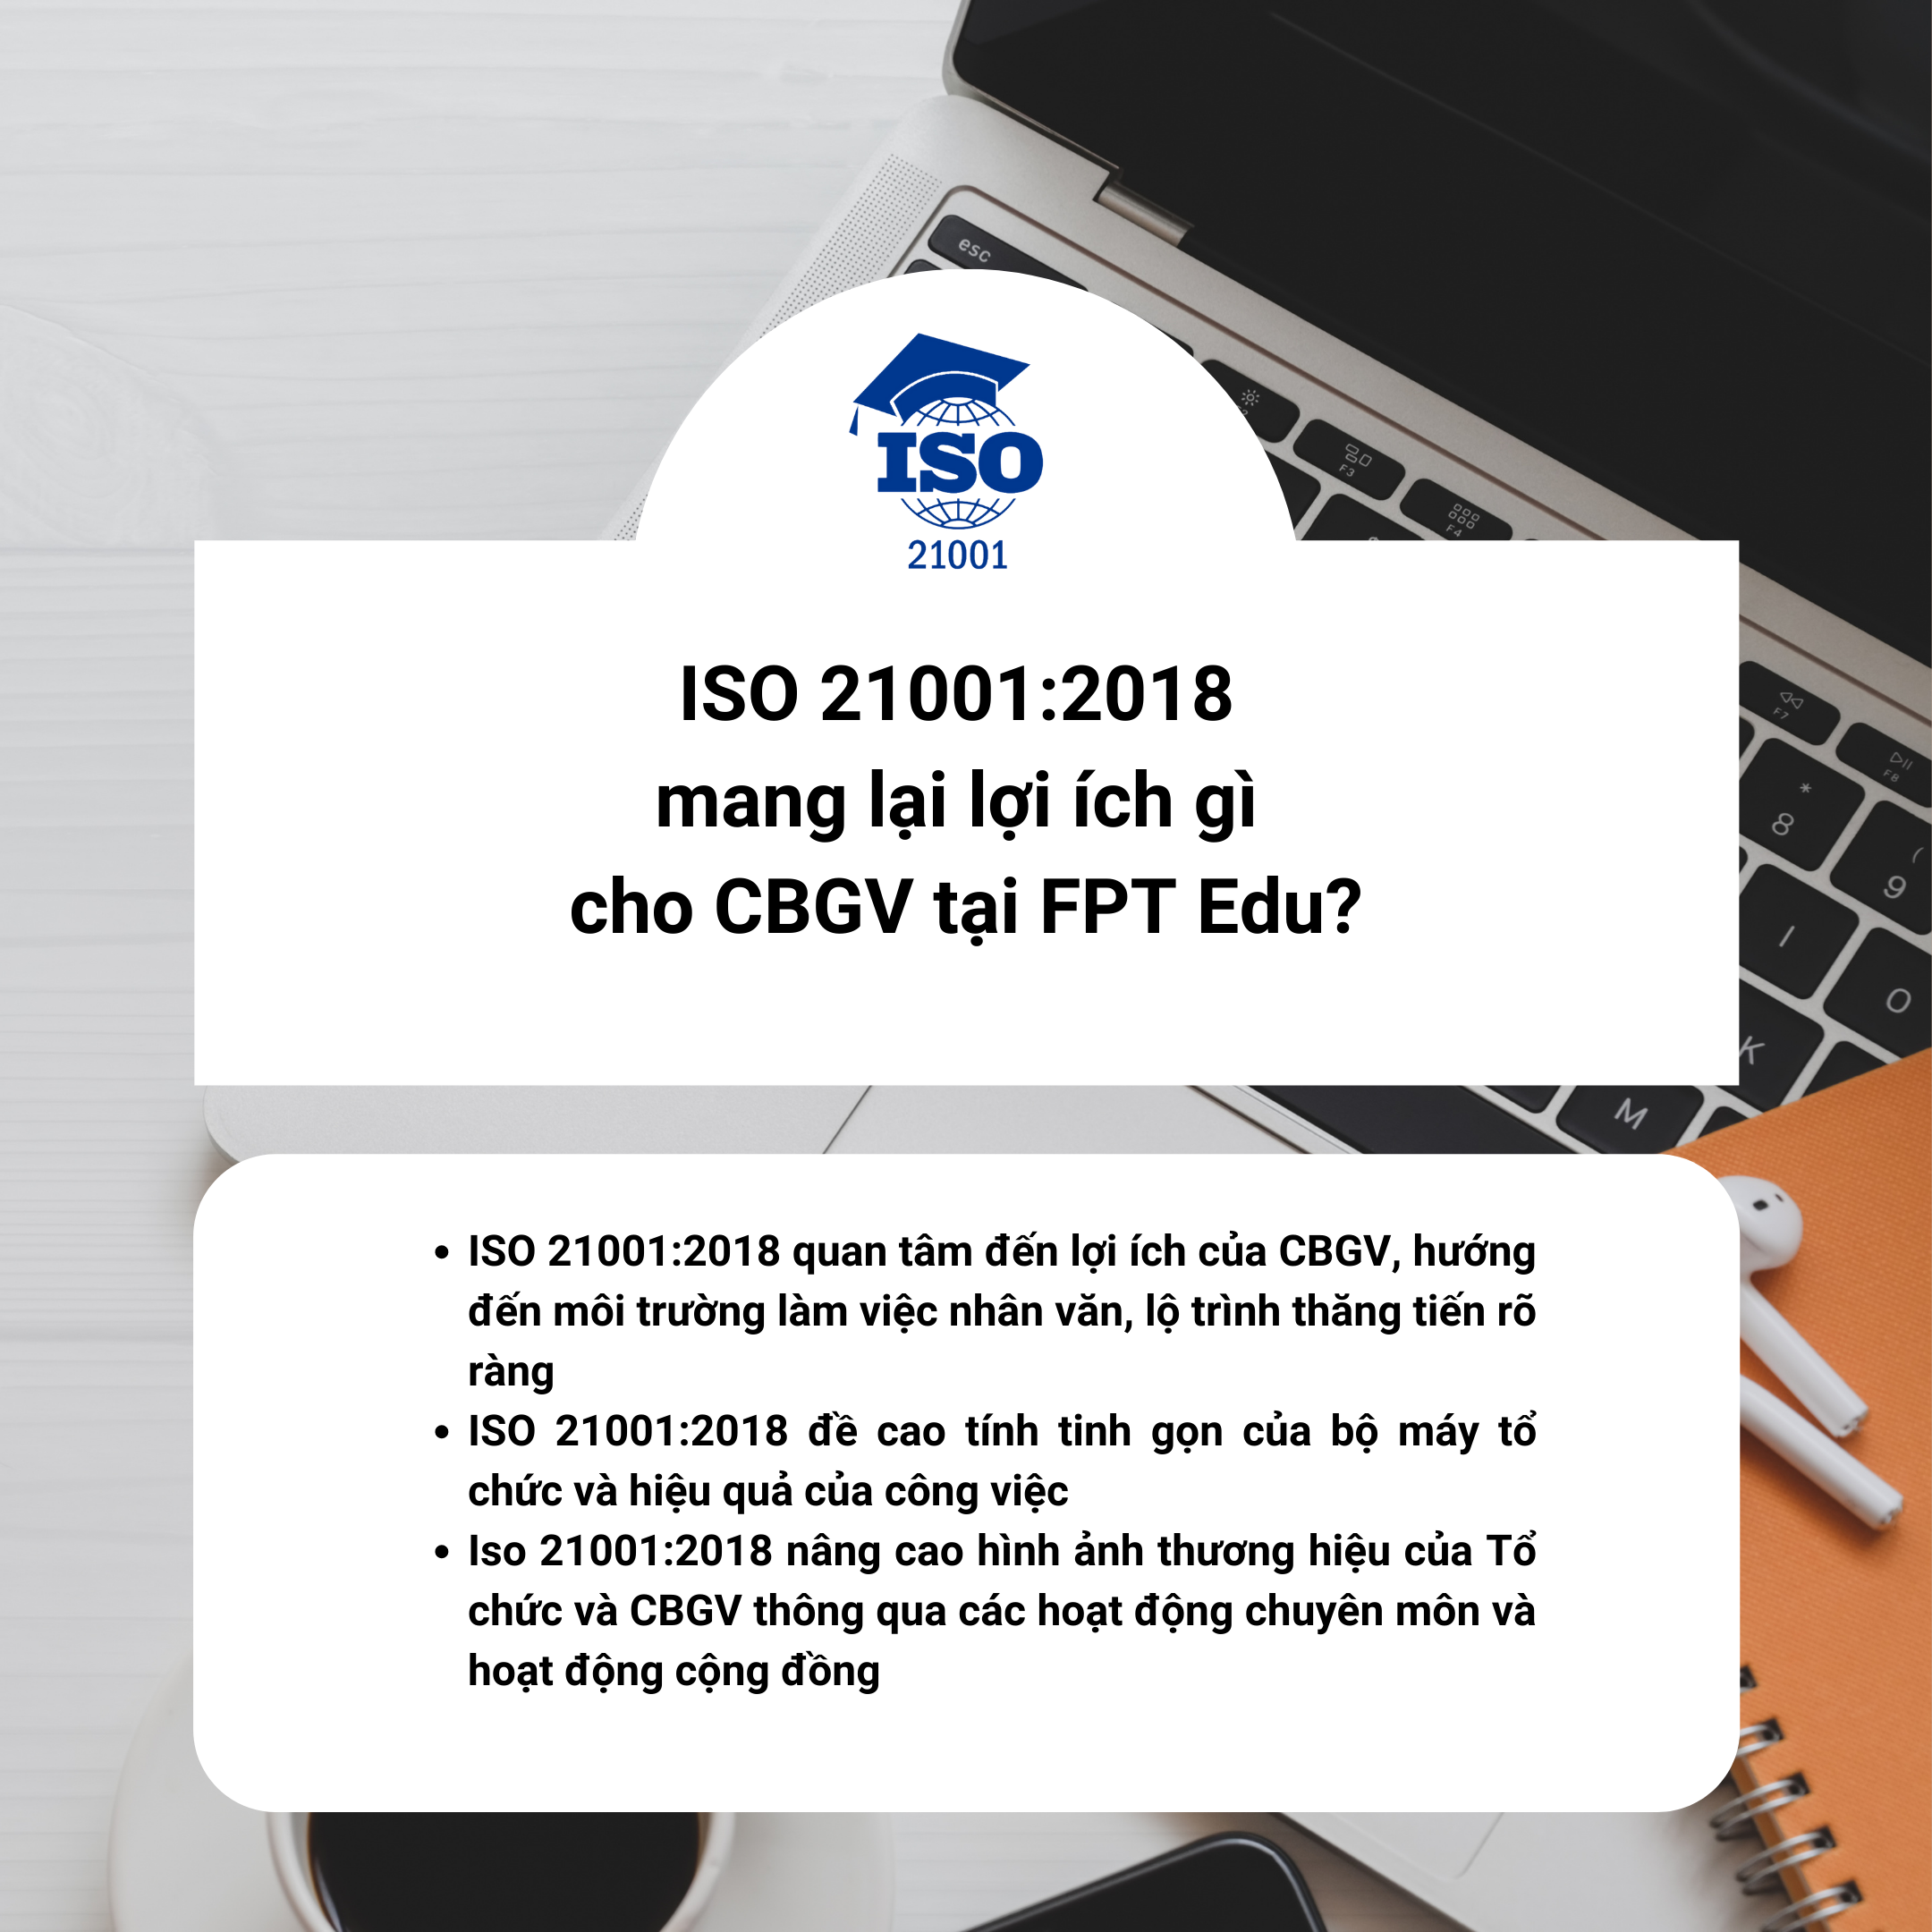 Q&A về ISO 21001:2018